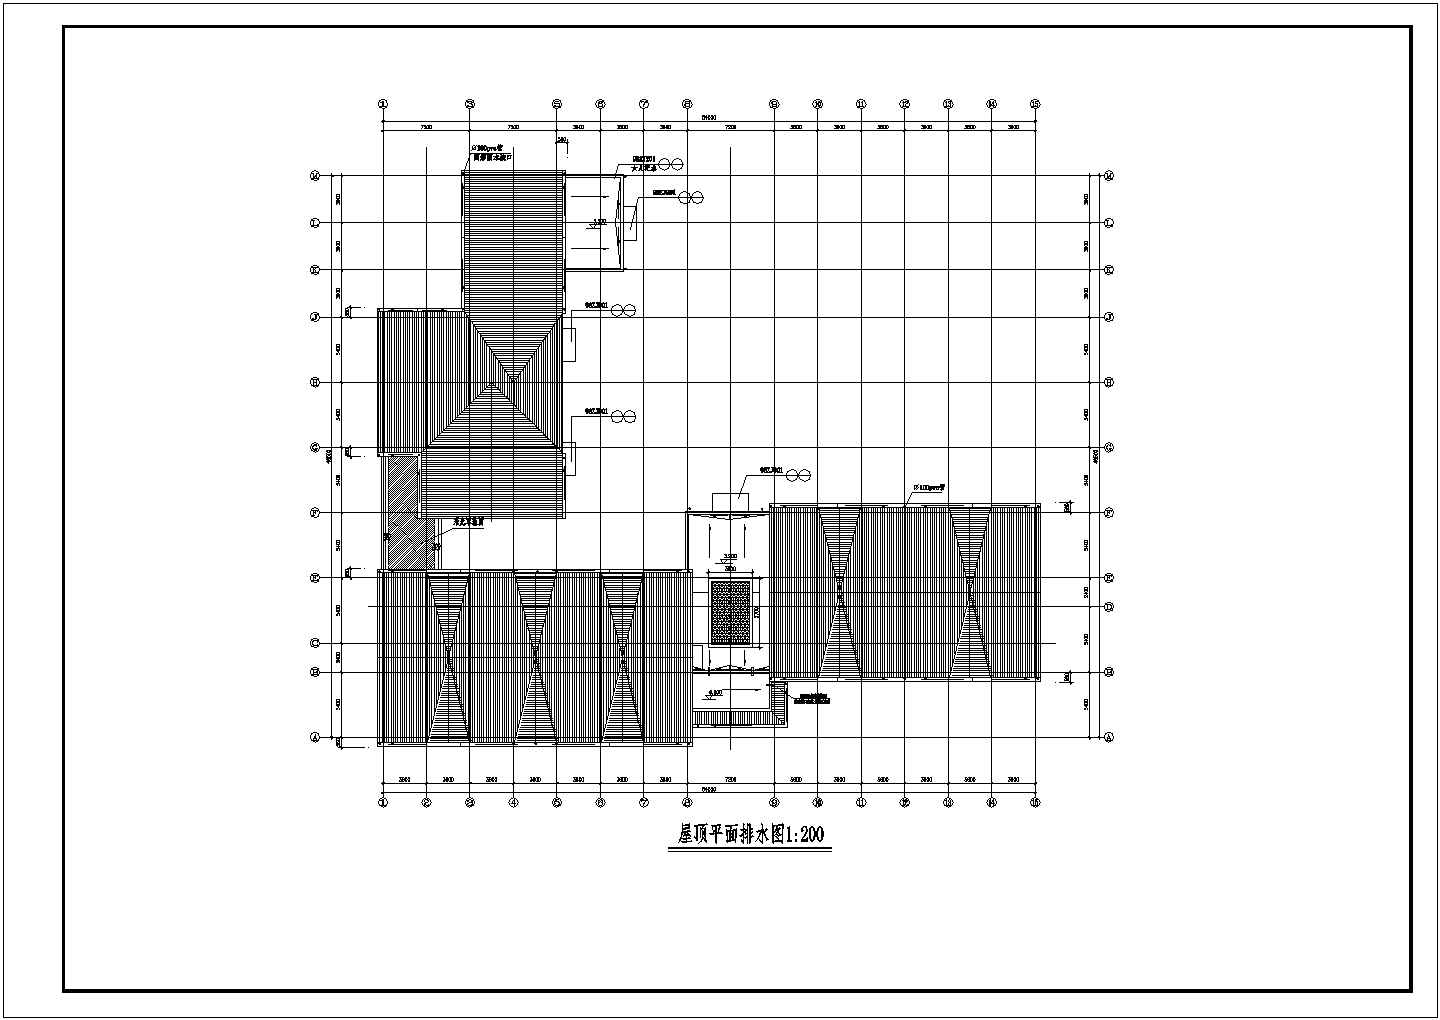 收费站及养护工区主楼建筑CAD图